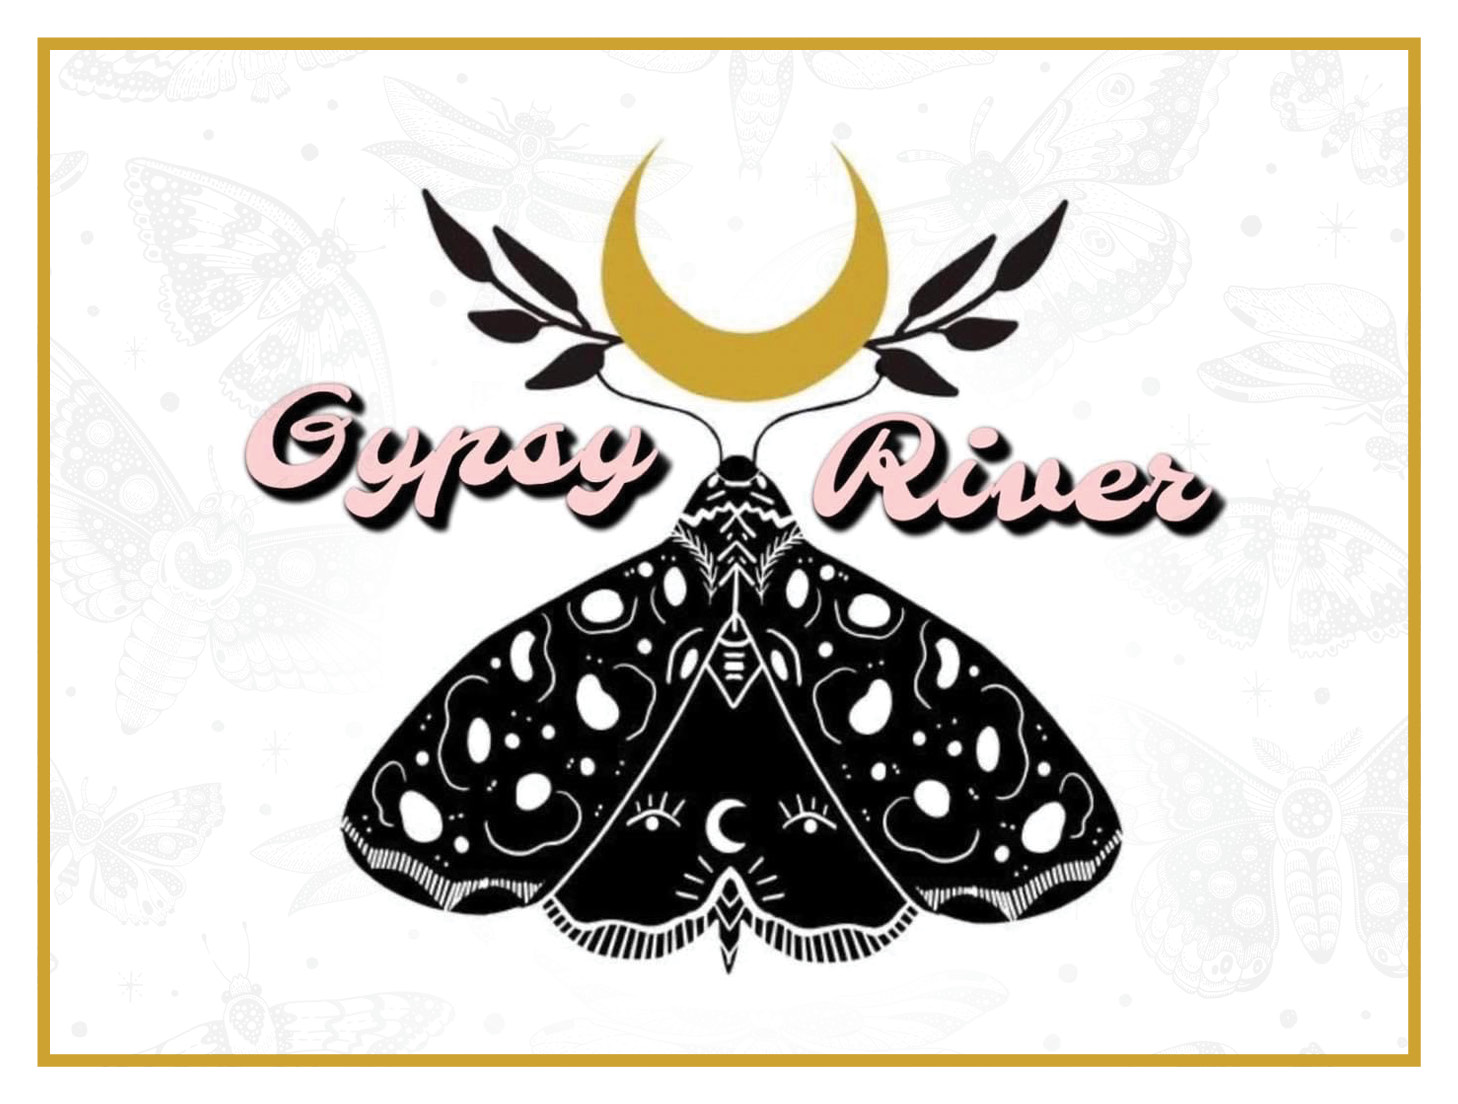 Gypsy River